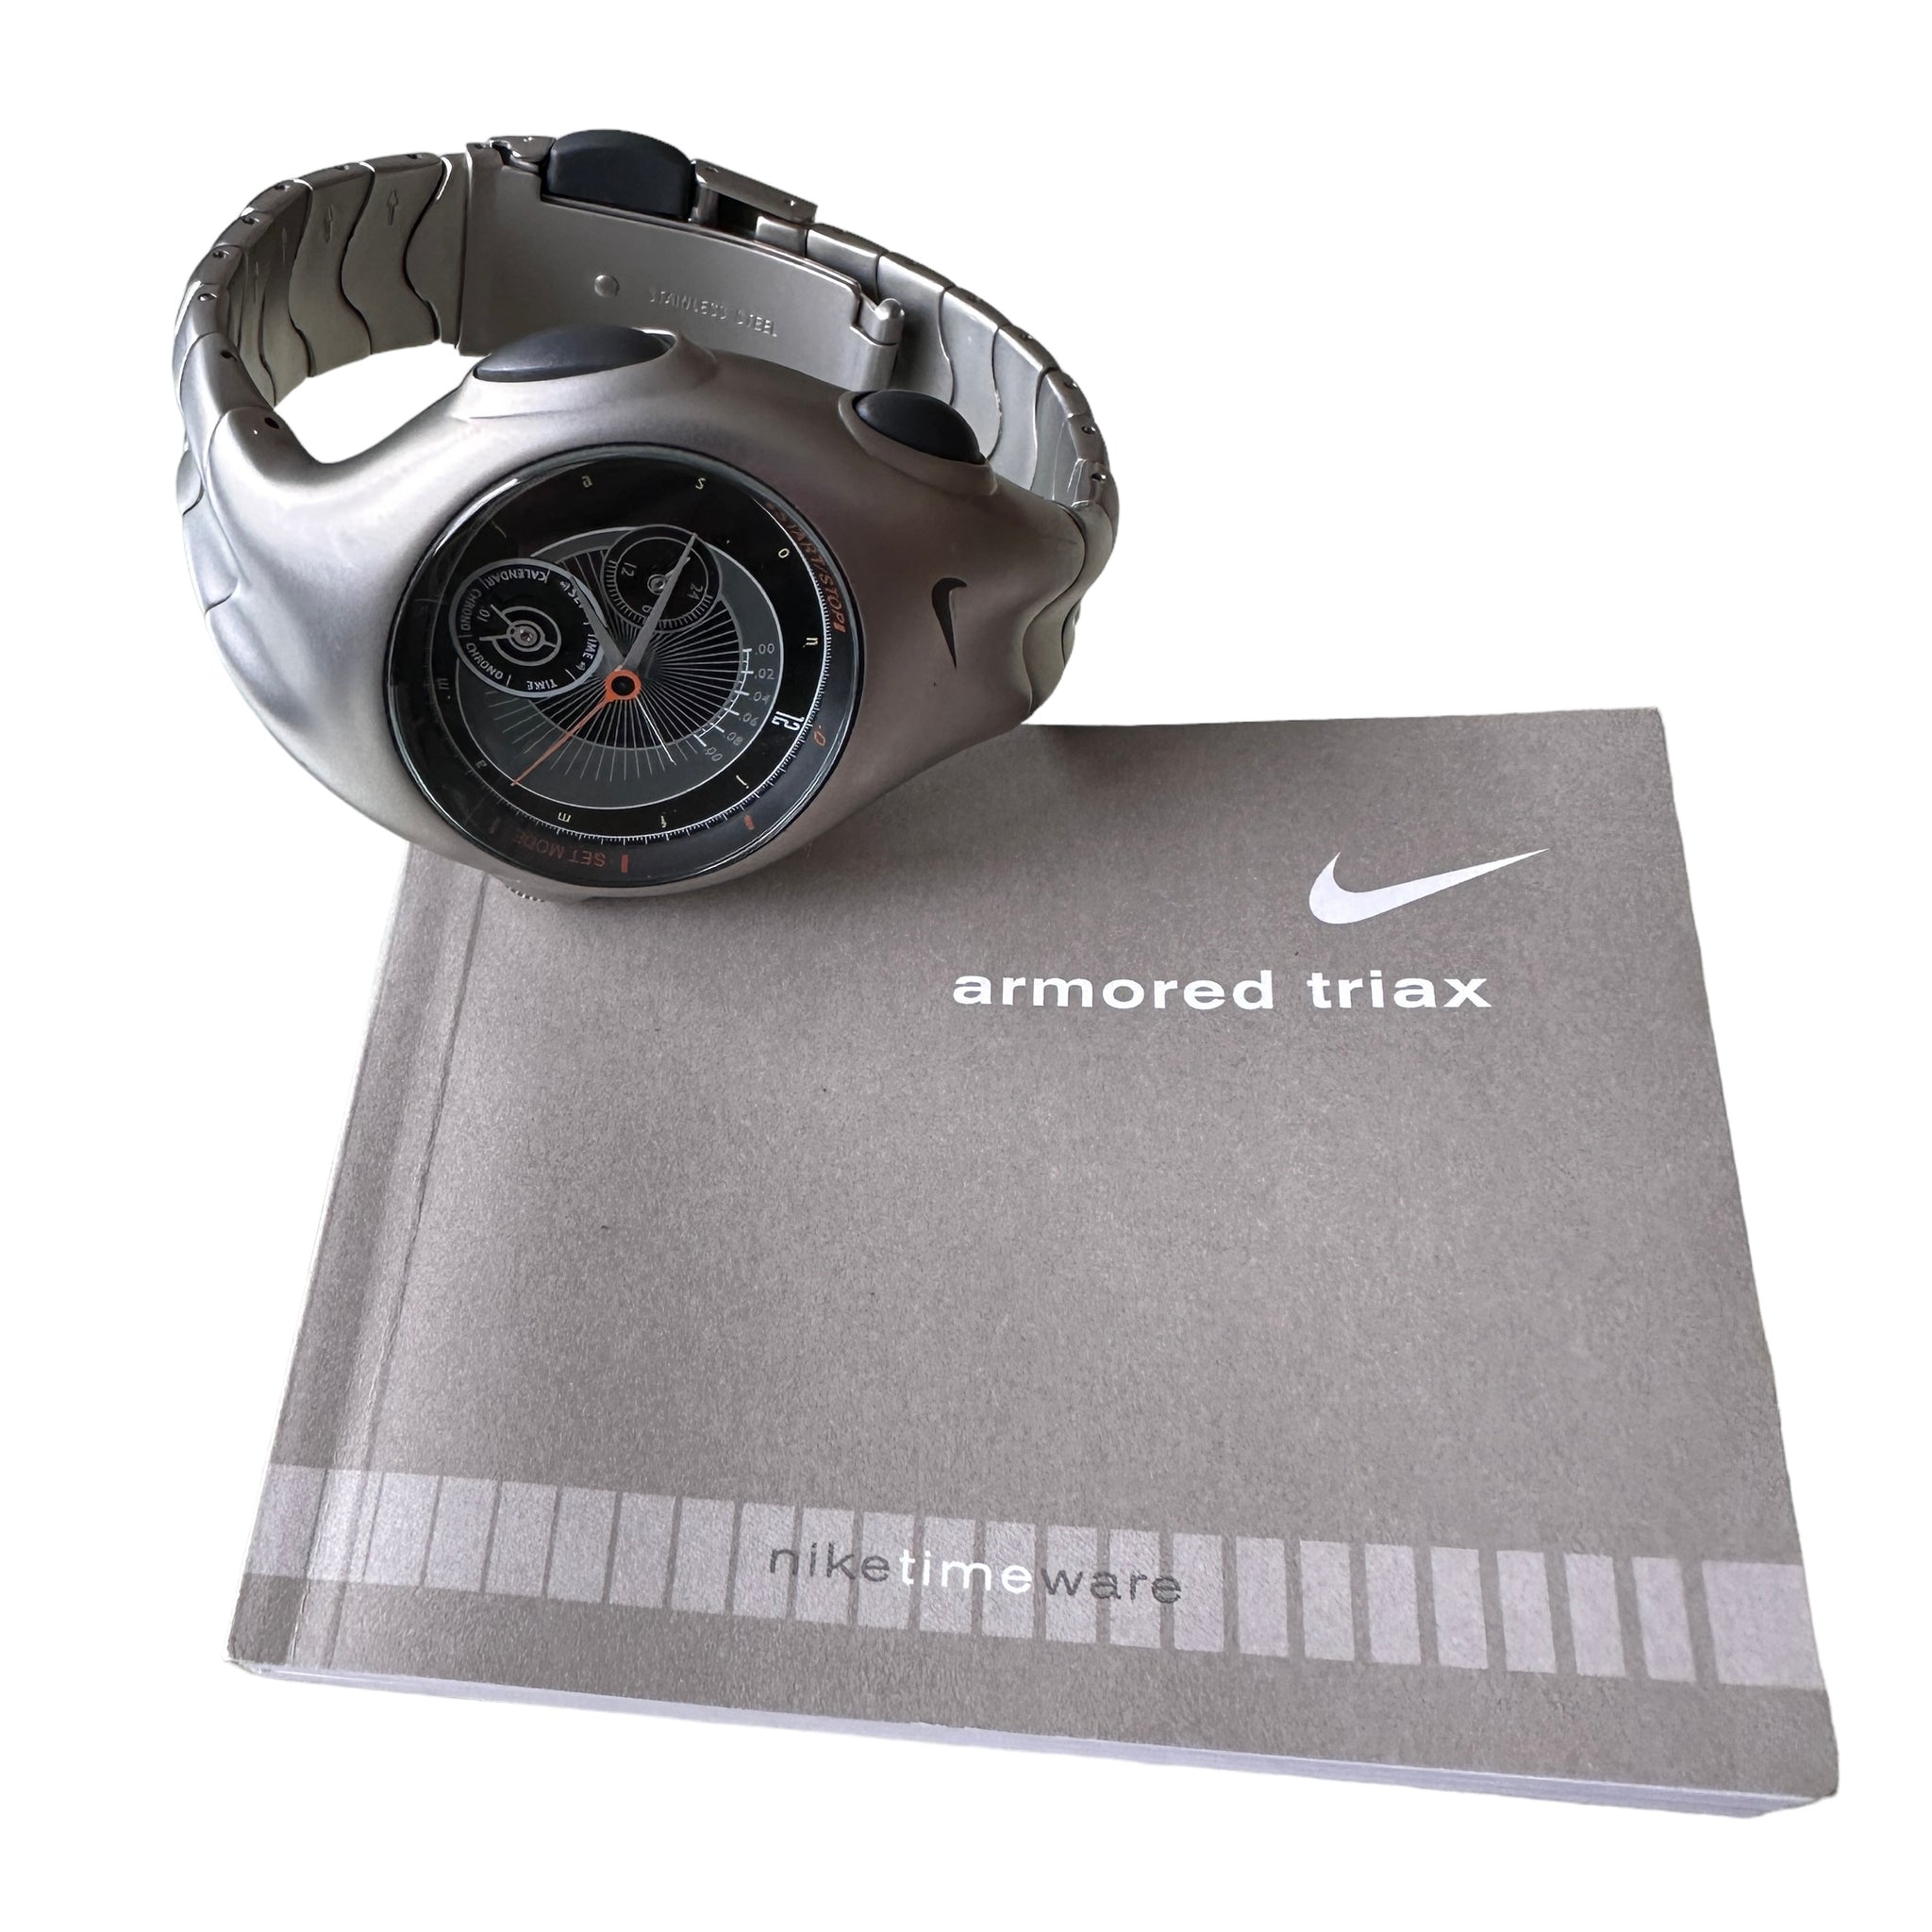 2001 Nike armored triax watch